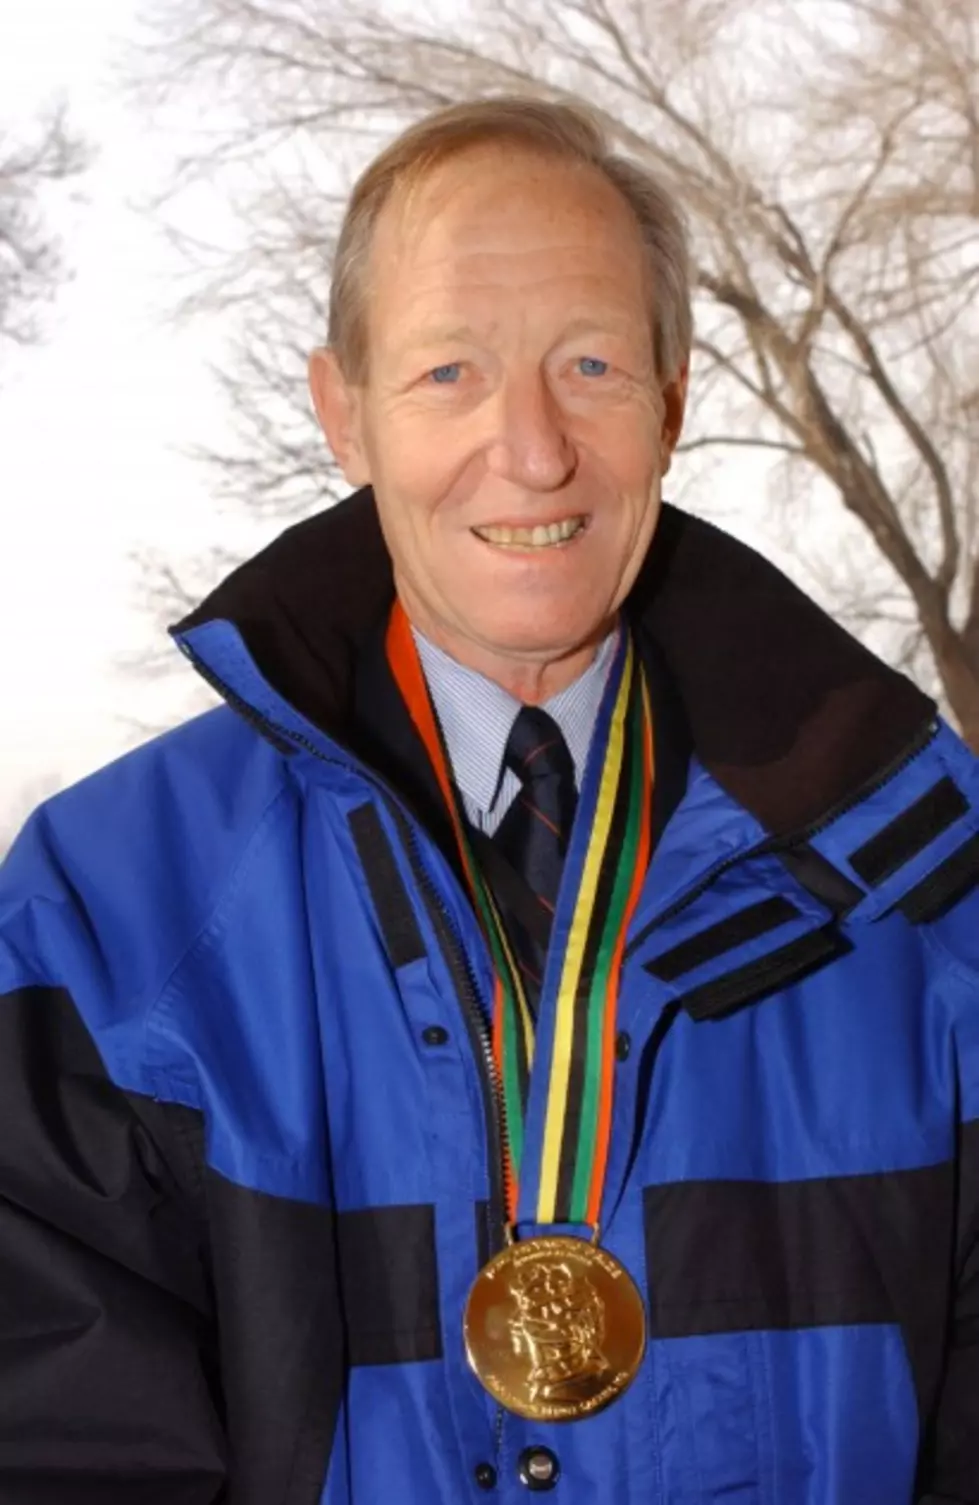 Swedish Anti-Doping Expert Bengt Saltin Dies at 79